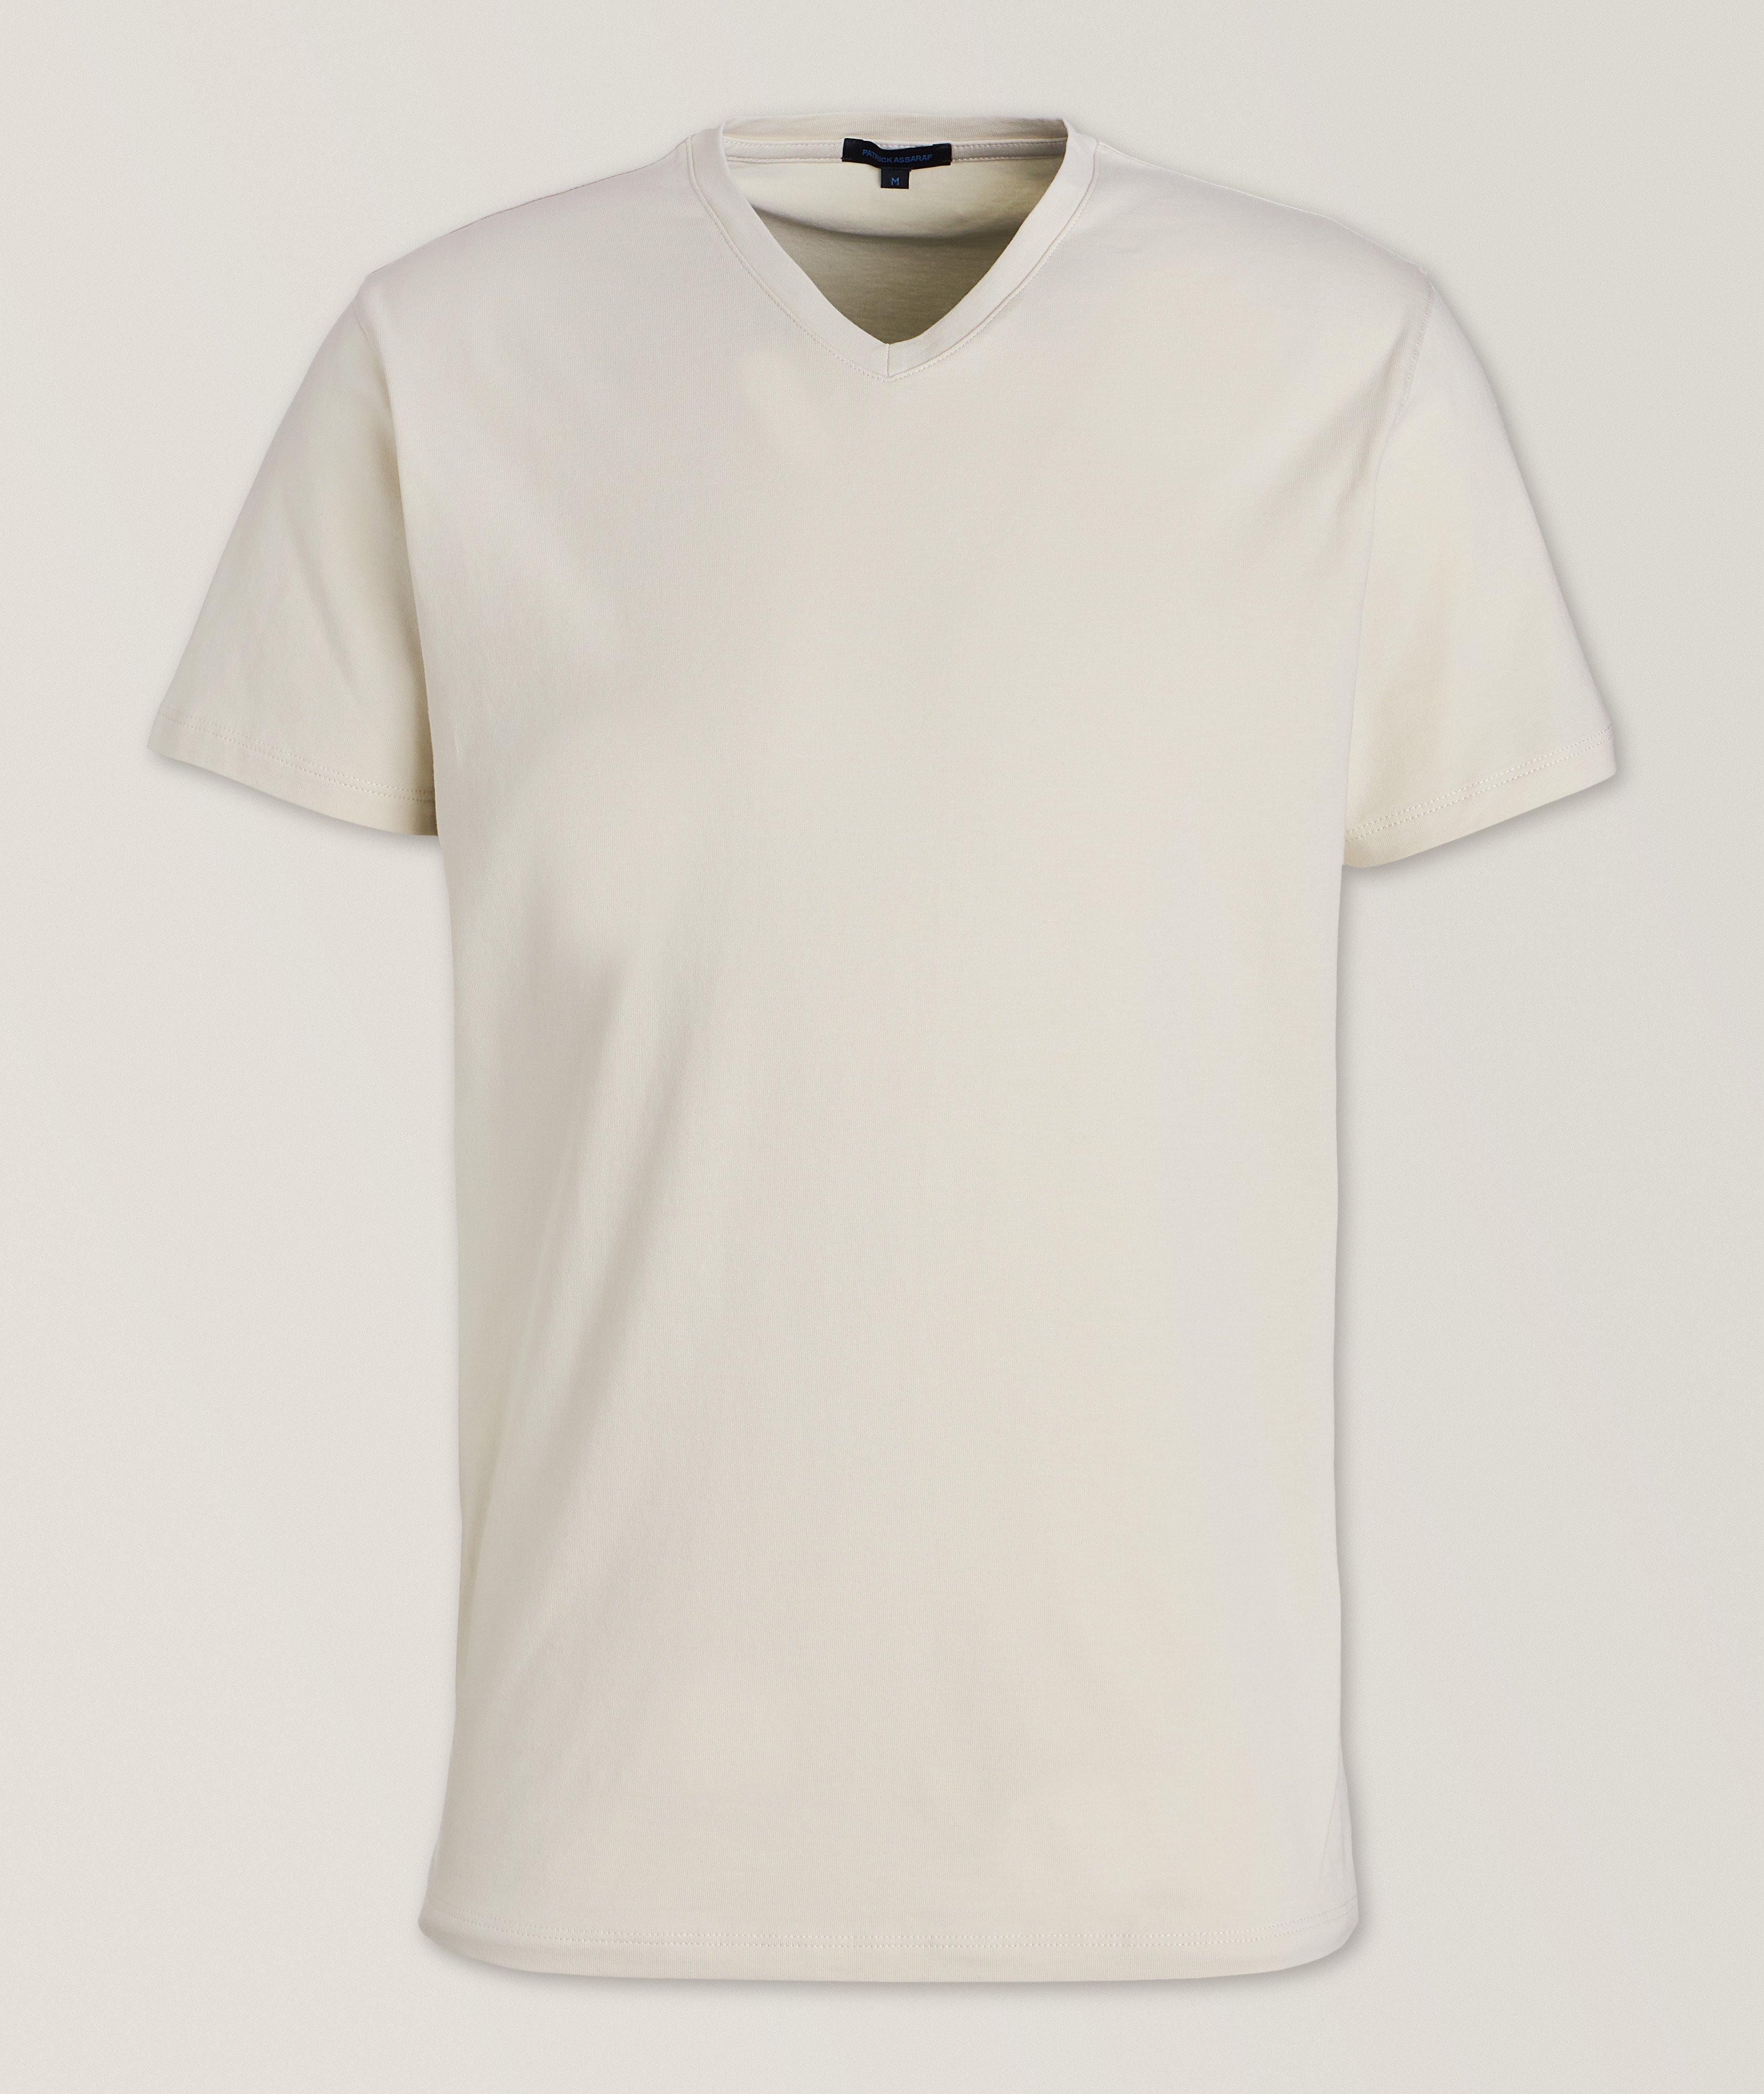 Pima Cotton-Stretch V-Neck T-Shirt image 0